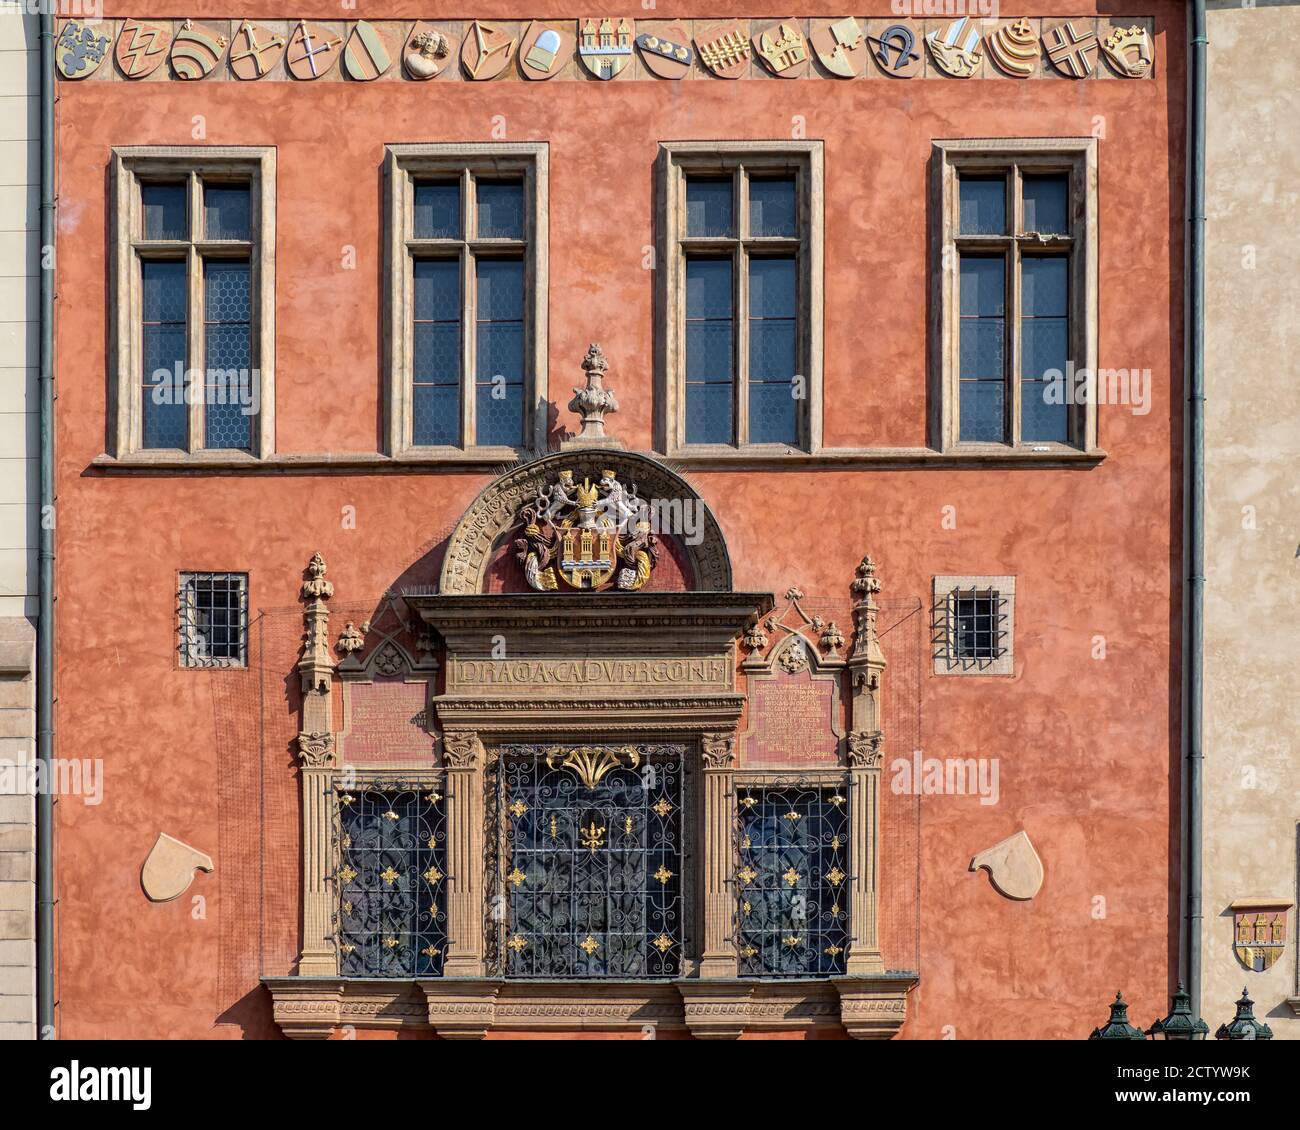 PRAGA, REPUBBLICA CECA - 18 LUGLIO 2019: Dettaglio sulla facciata del Centro informazioni turistiche nel Vecchio Municipio (Staromestska radnice) Foto Stock